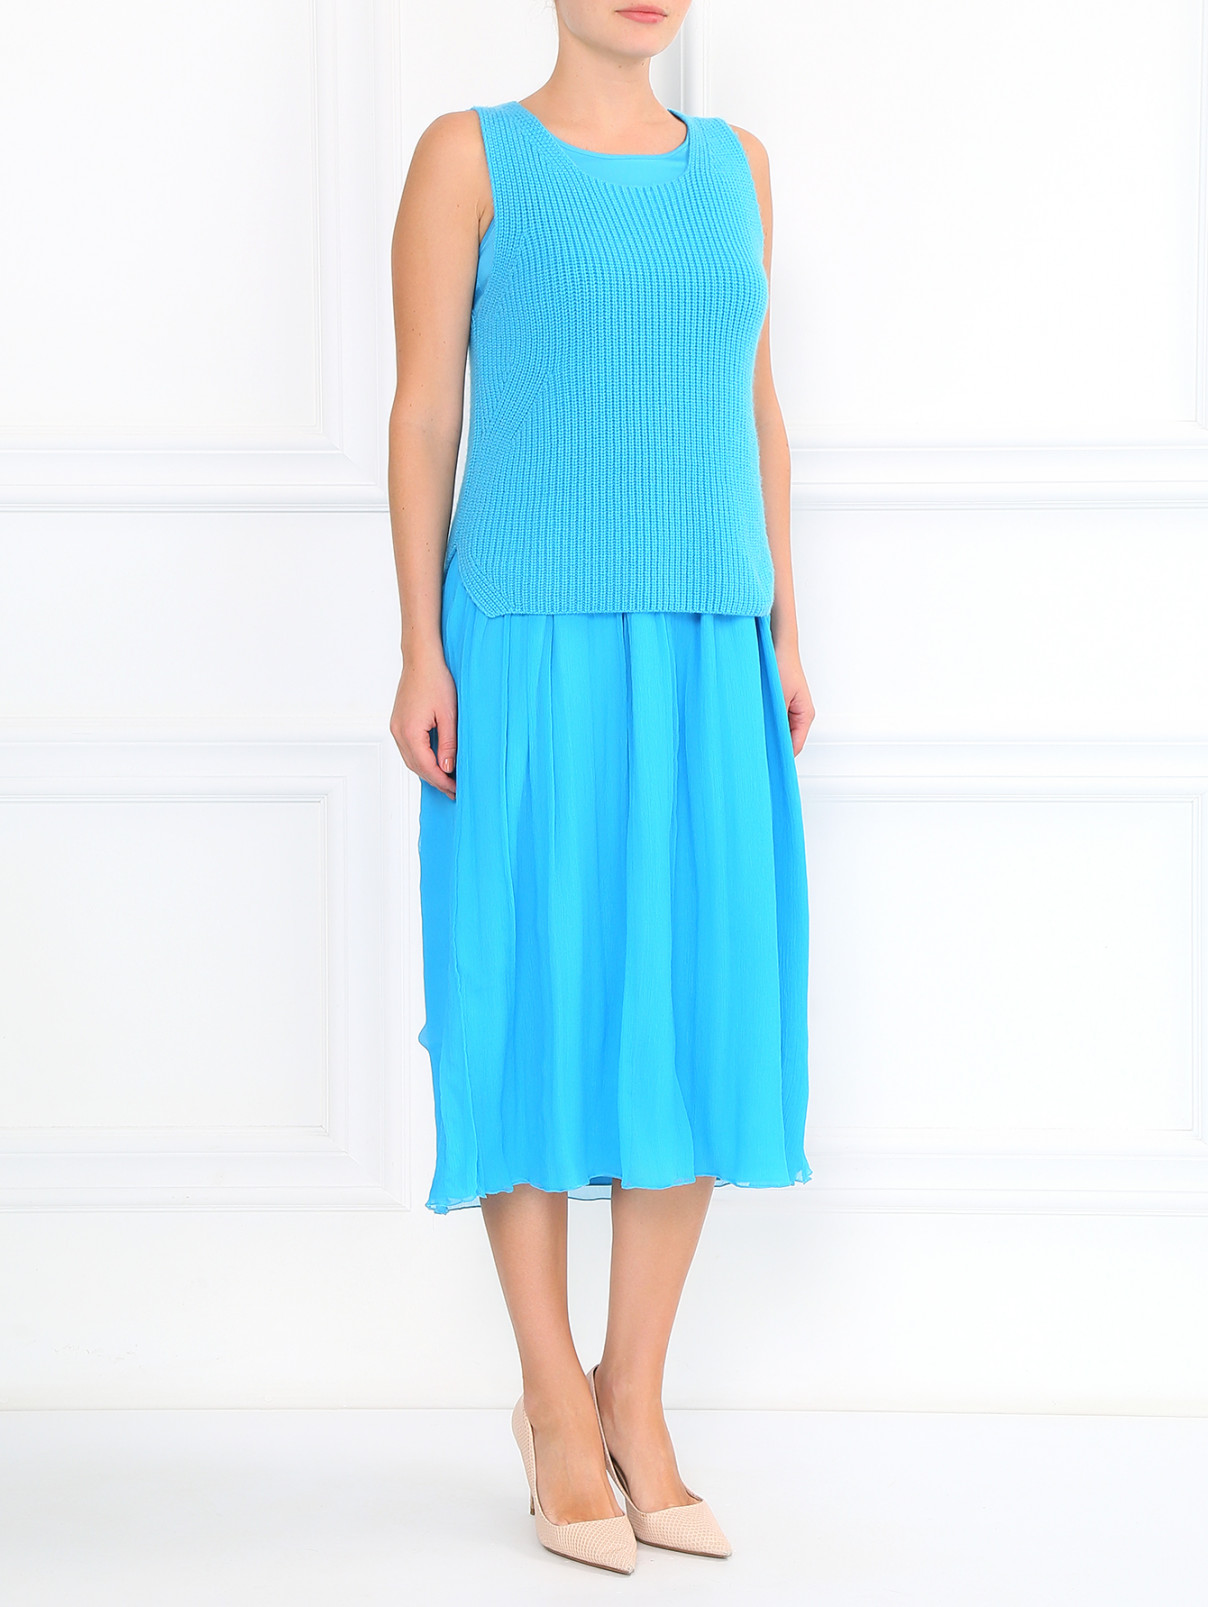 Платье из шелка в комплекте с жилетом из кашемира Ermanno Scervino  –  Модель Общий вид  – Цвет:  Синий